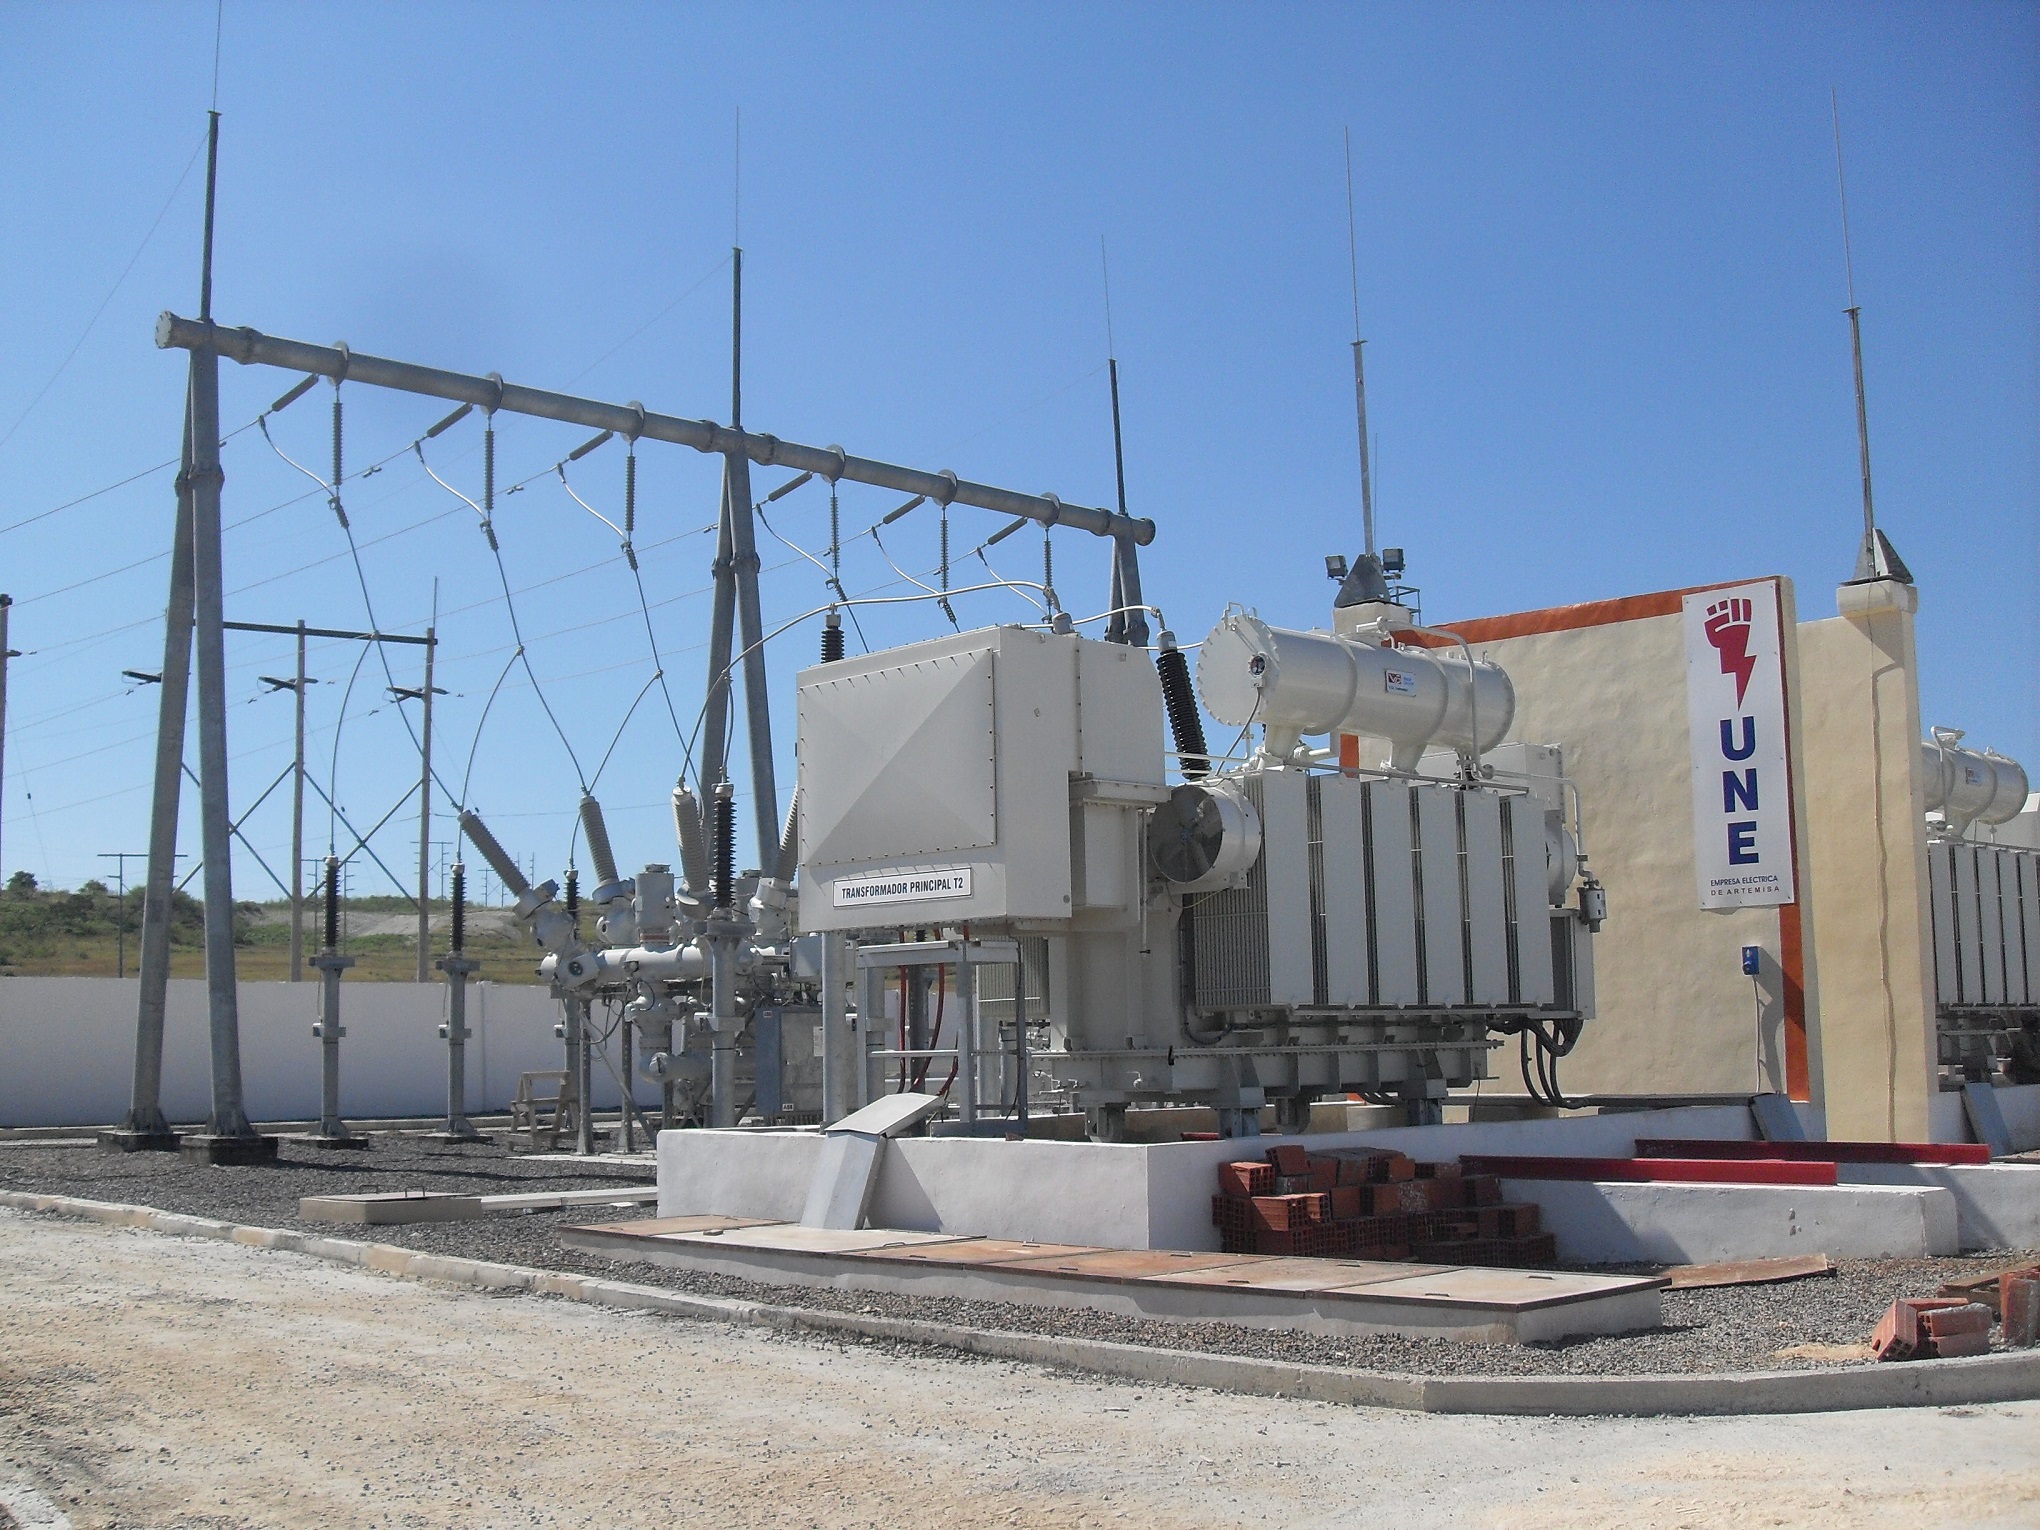 HV Electrical substation